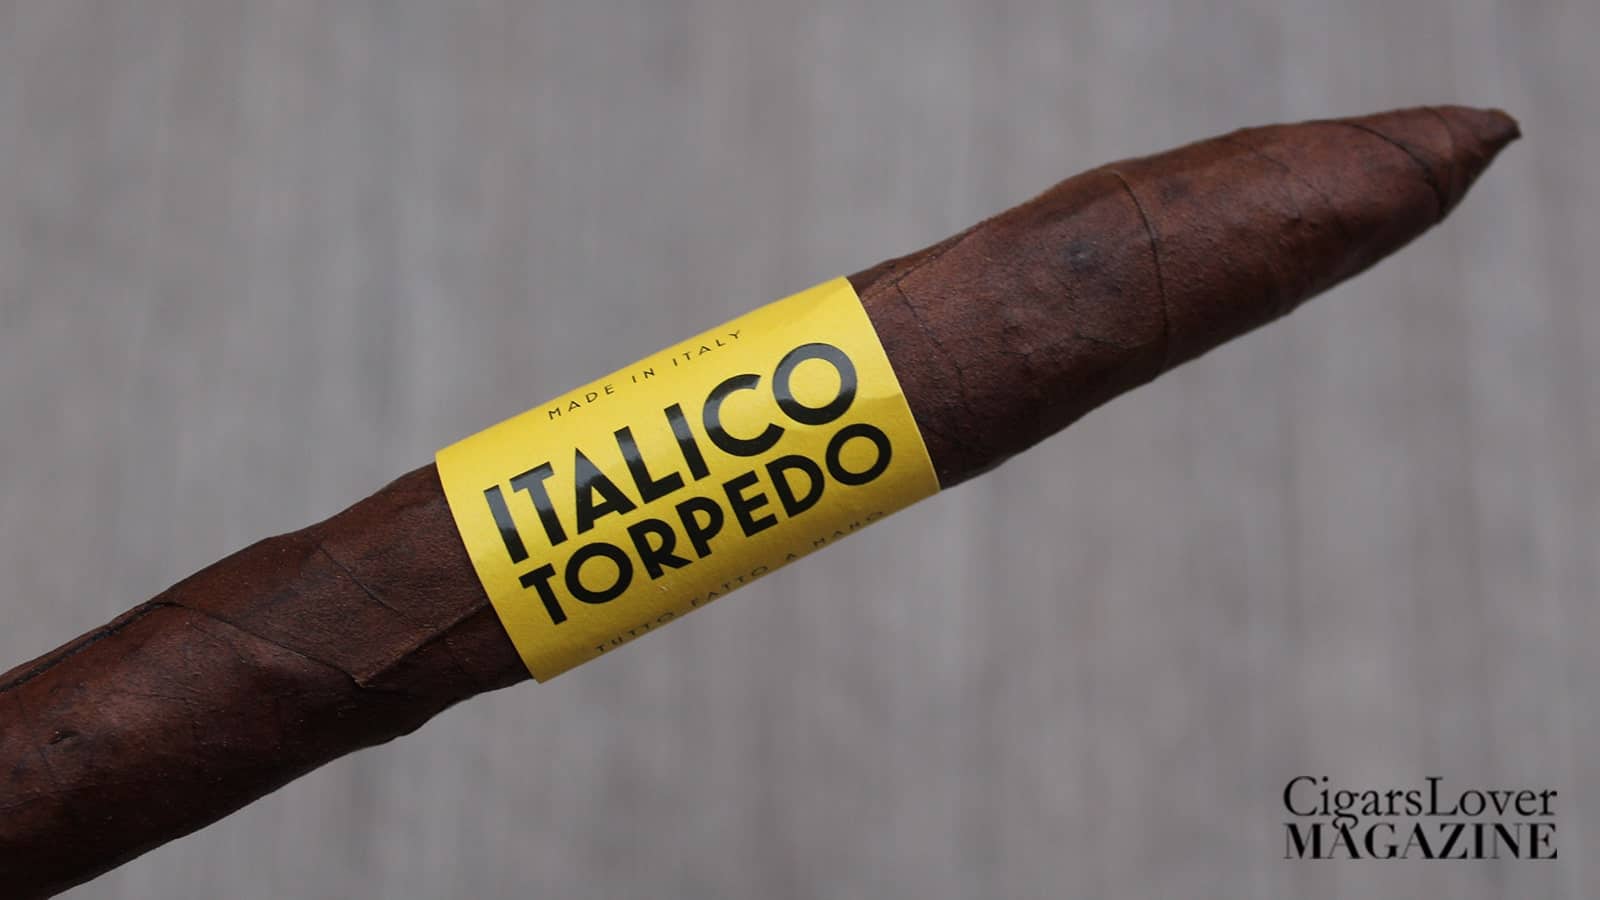 Italico Torpedo